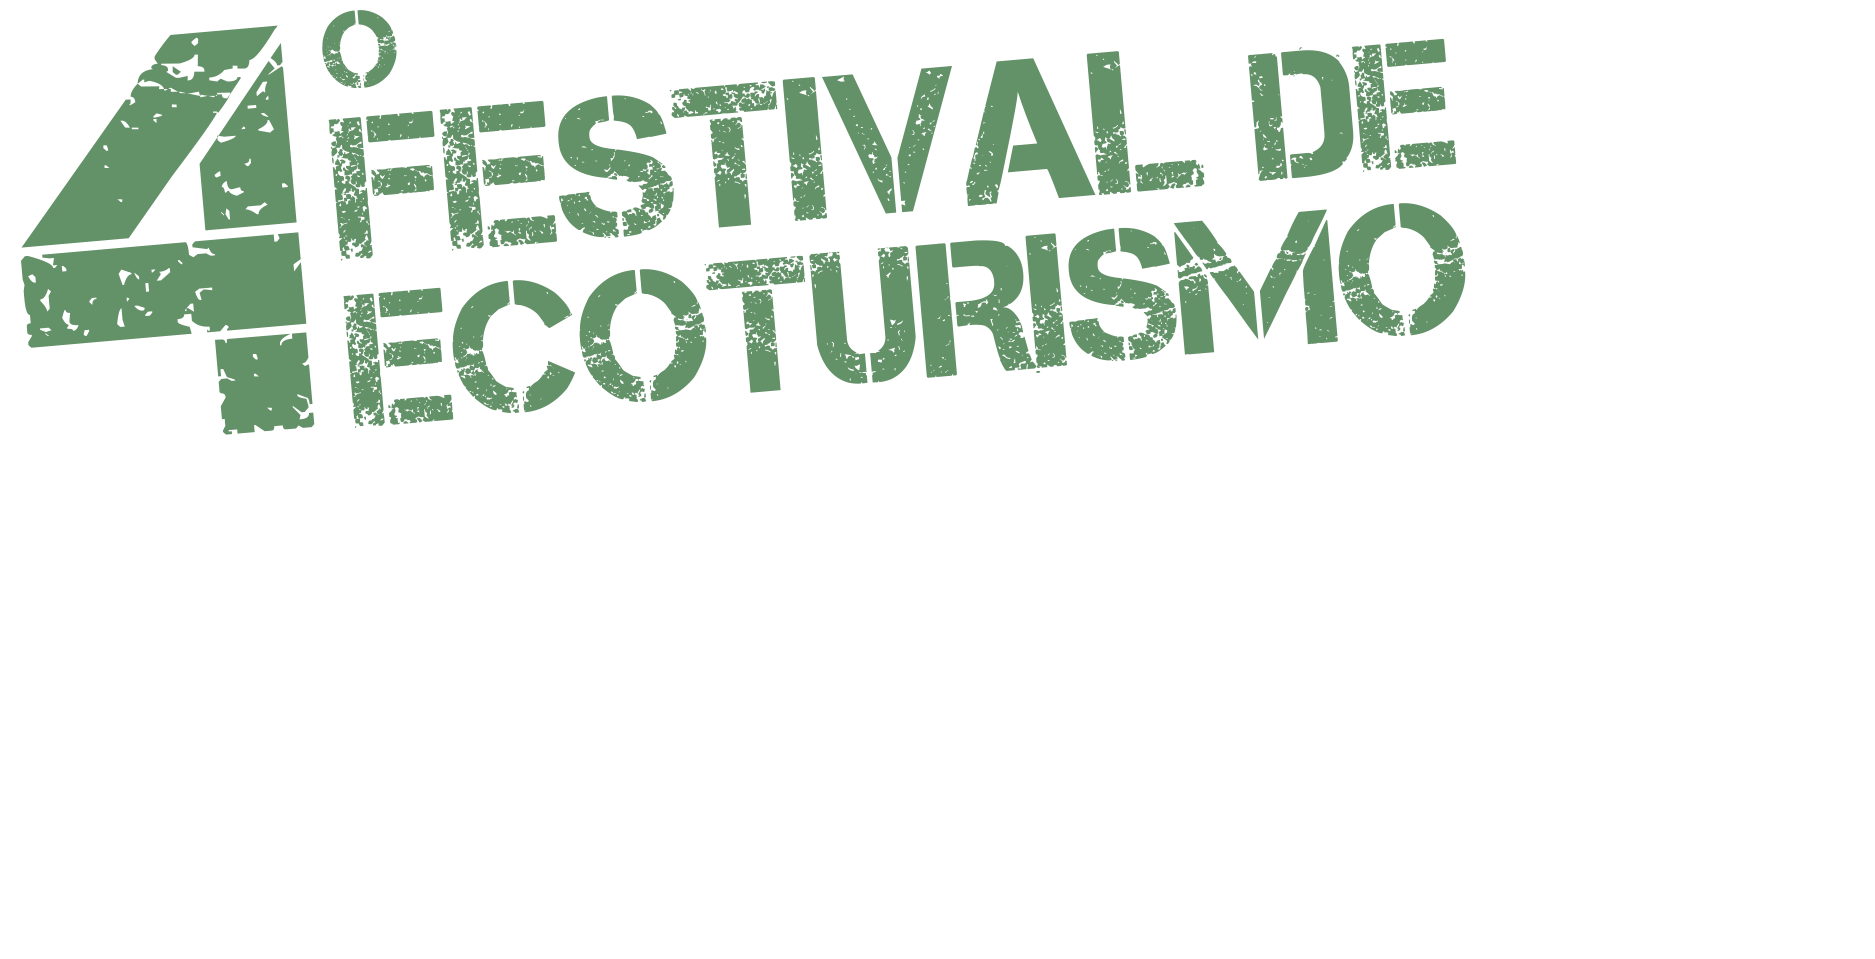 Festival de Ecoturismo en Peligro de Extinción